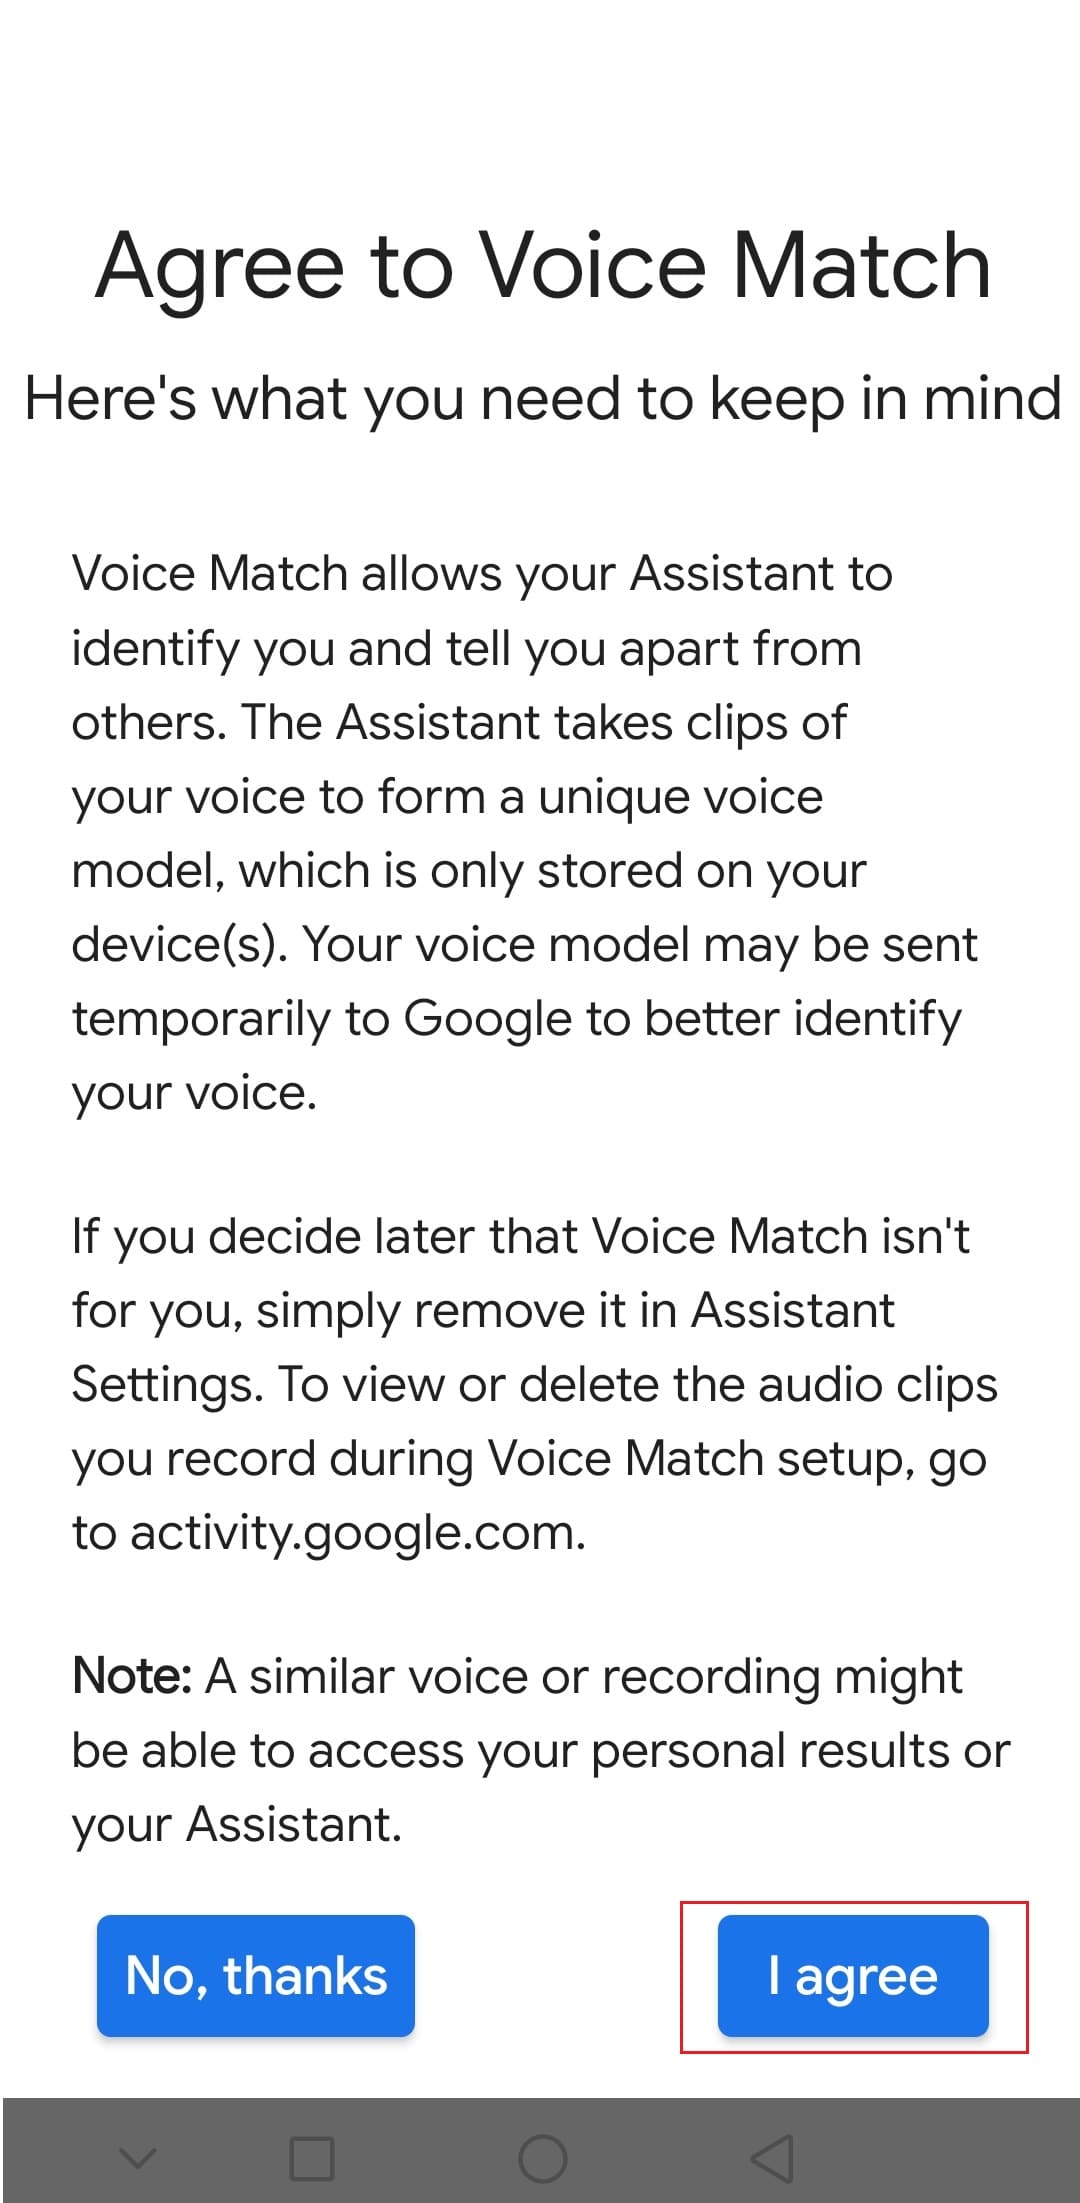 нажмите на опцию «Я согласен», чтобы согласиться на Voice Match в приложении Google для Android.